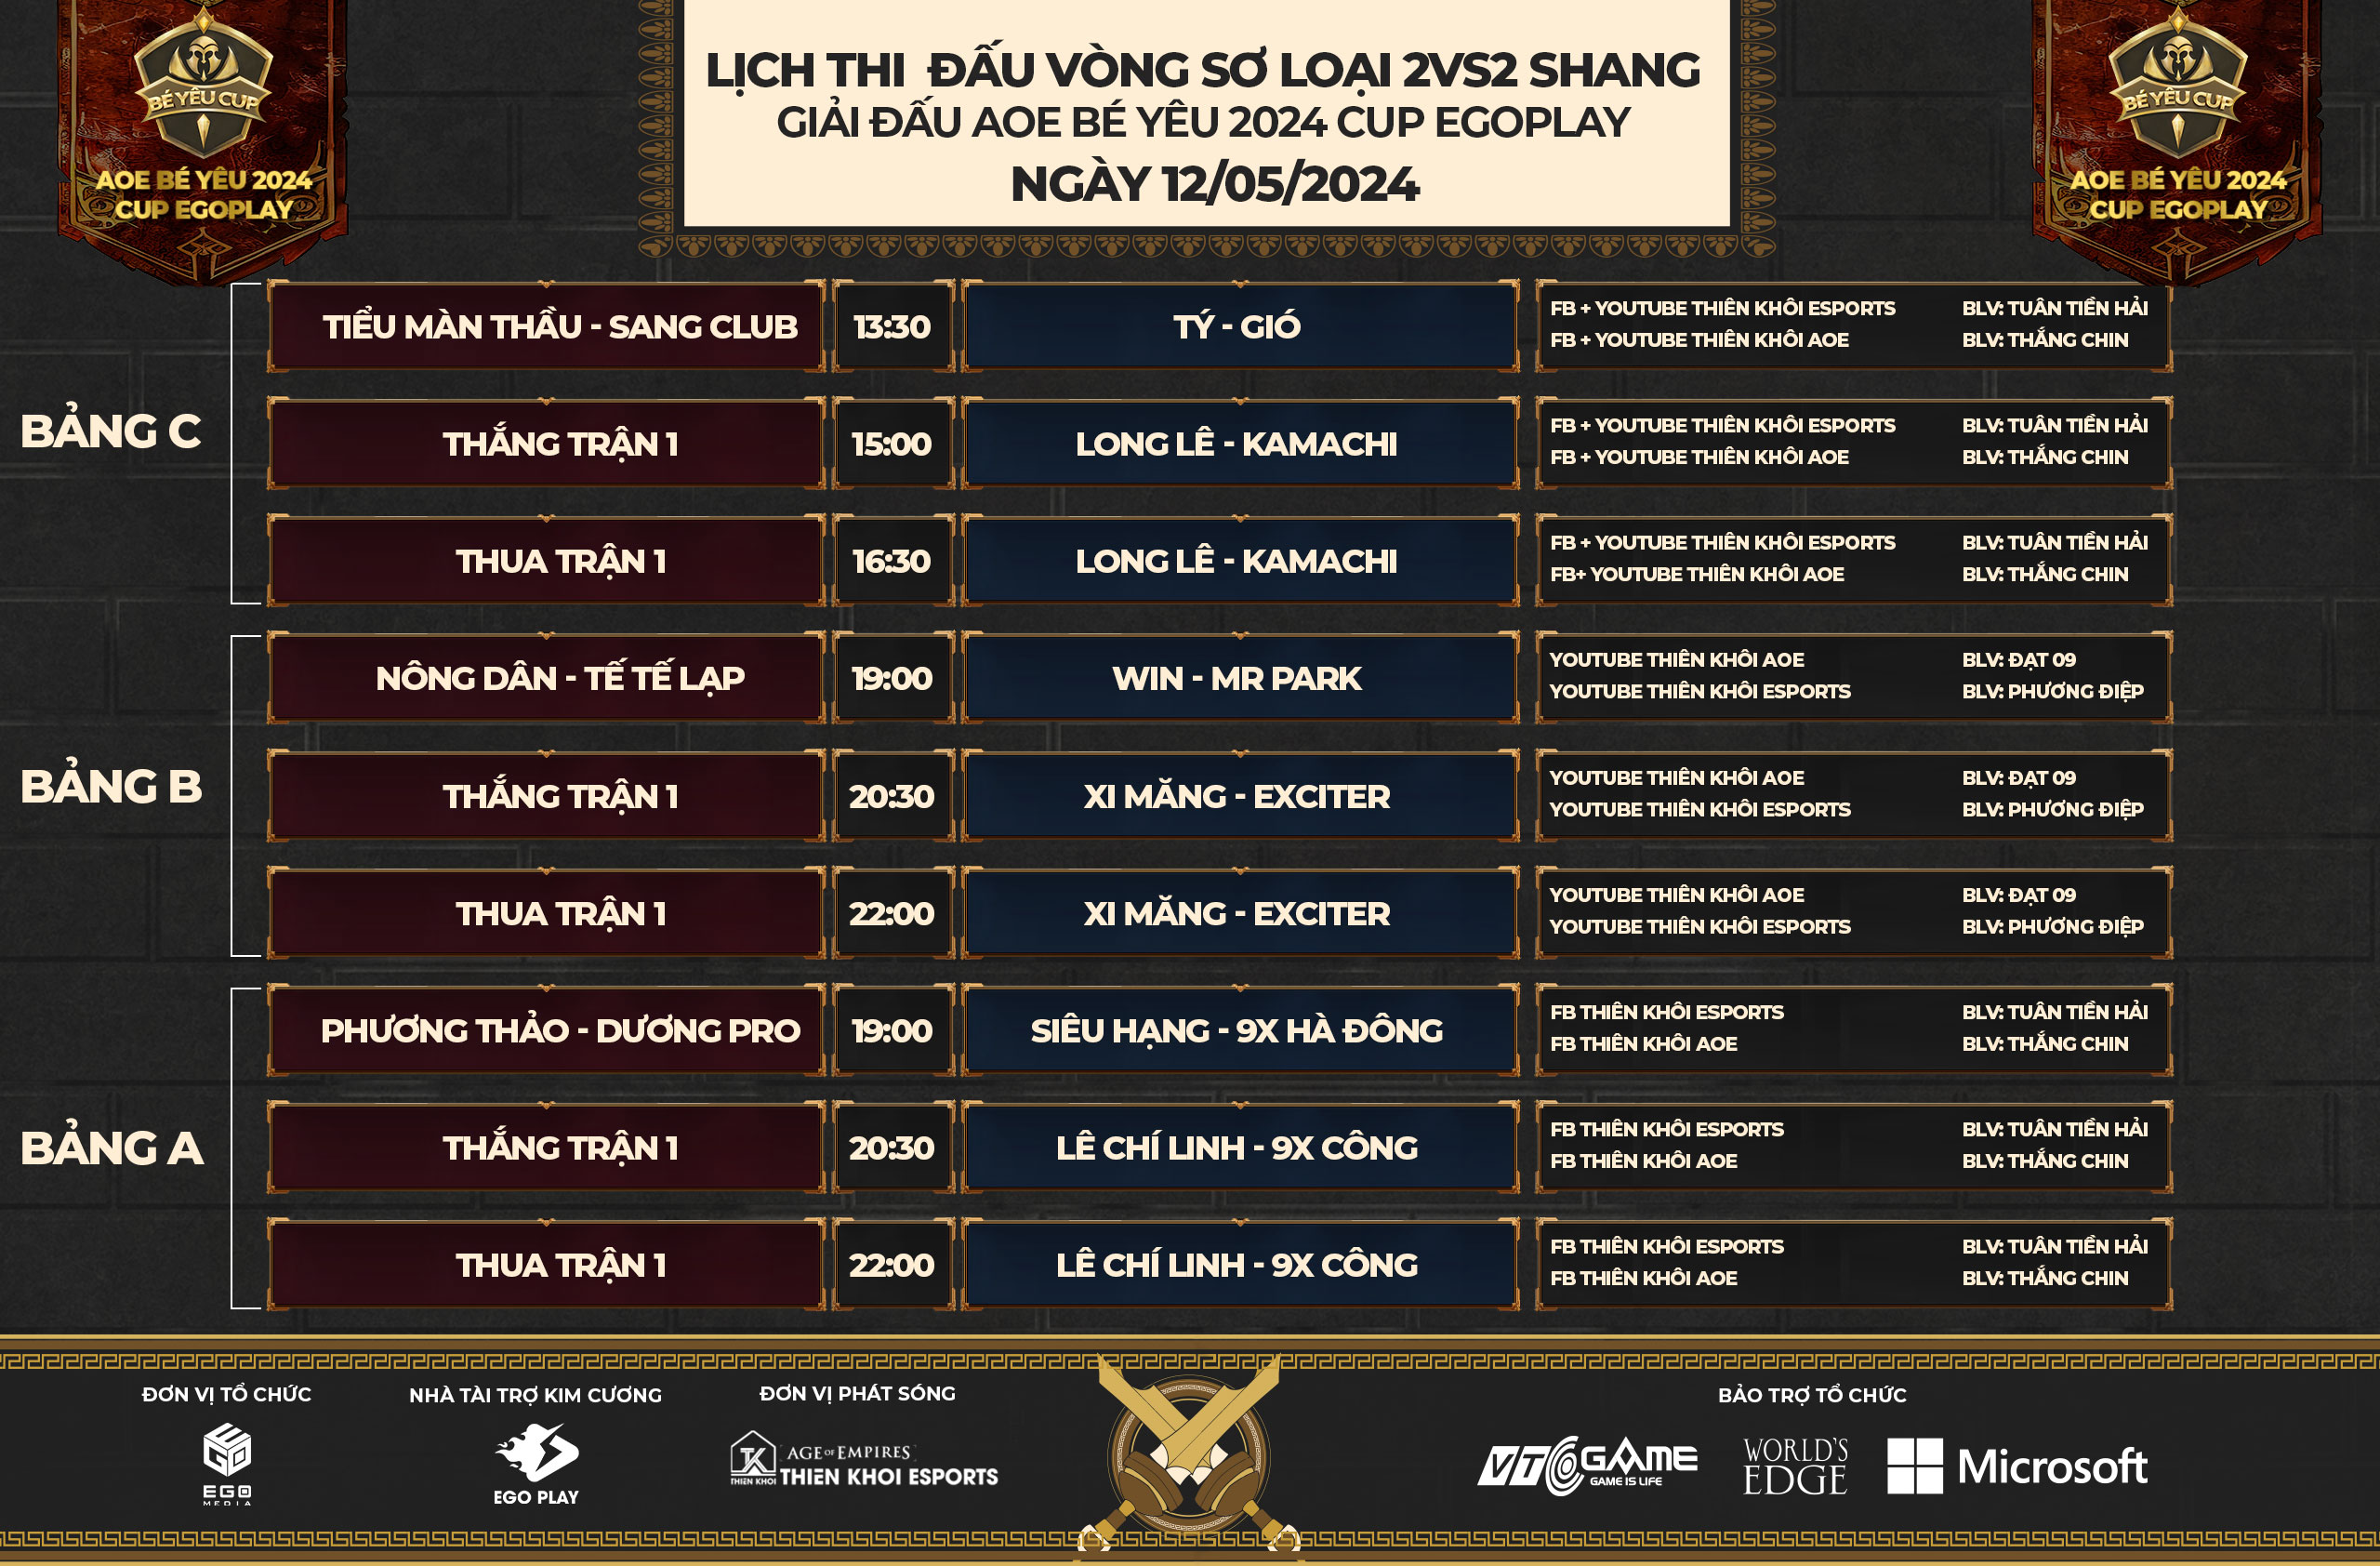 Lịch thi đấu vòng sơ loại 2vs2 Shang - AoE Bé Yêu 2024 Cup EGOPLAY